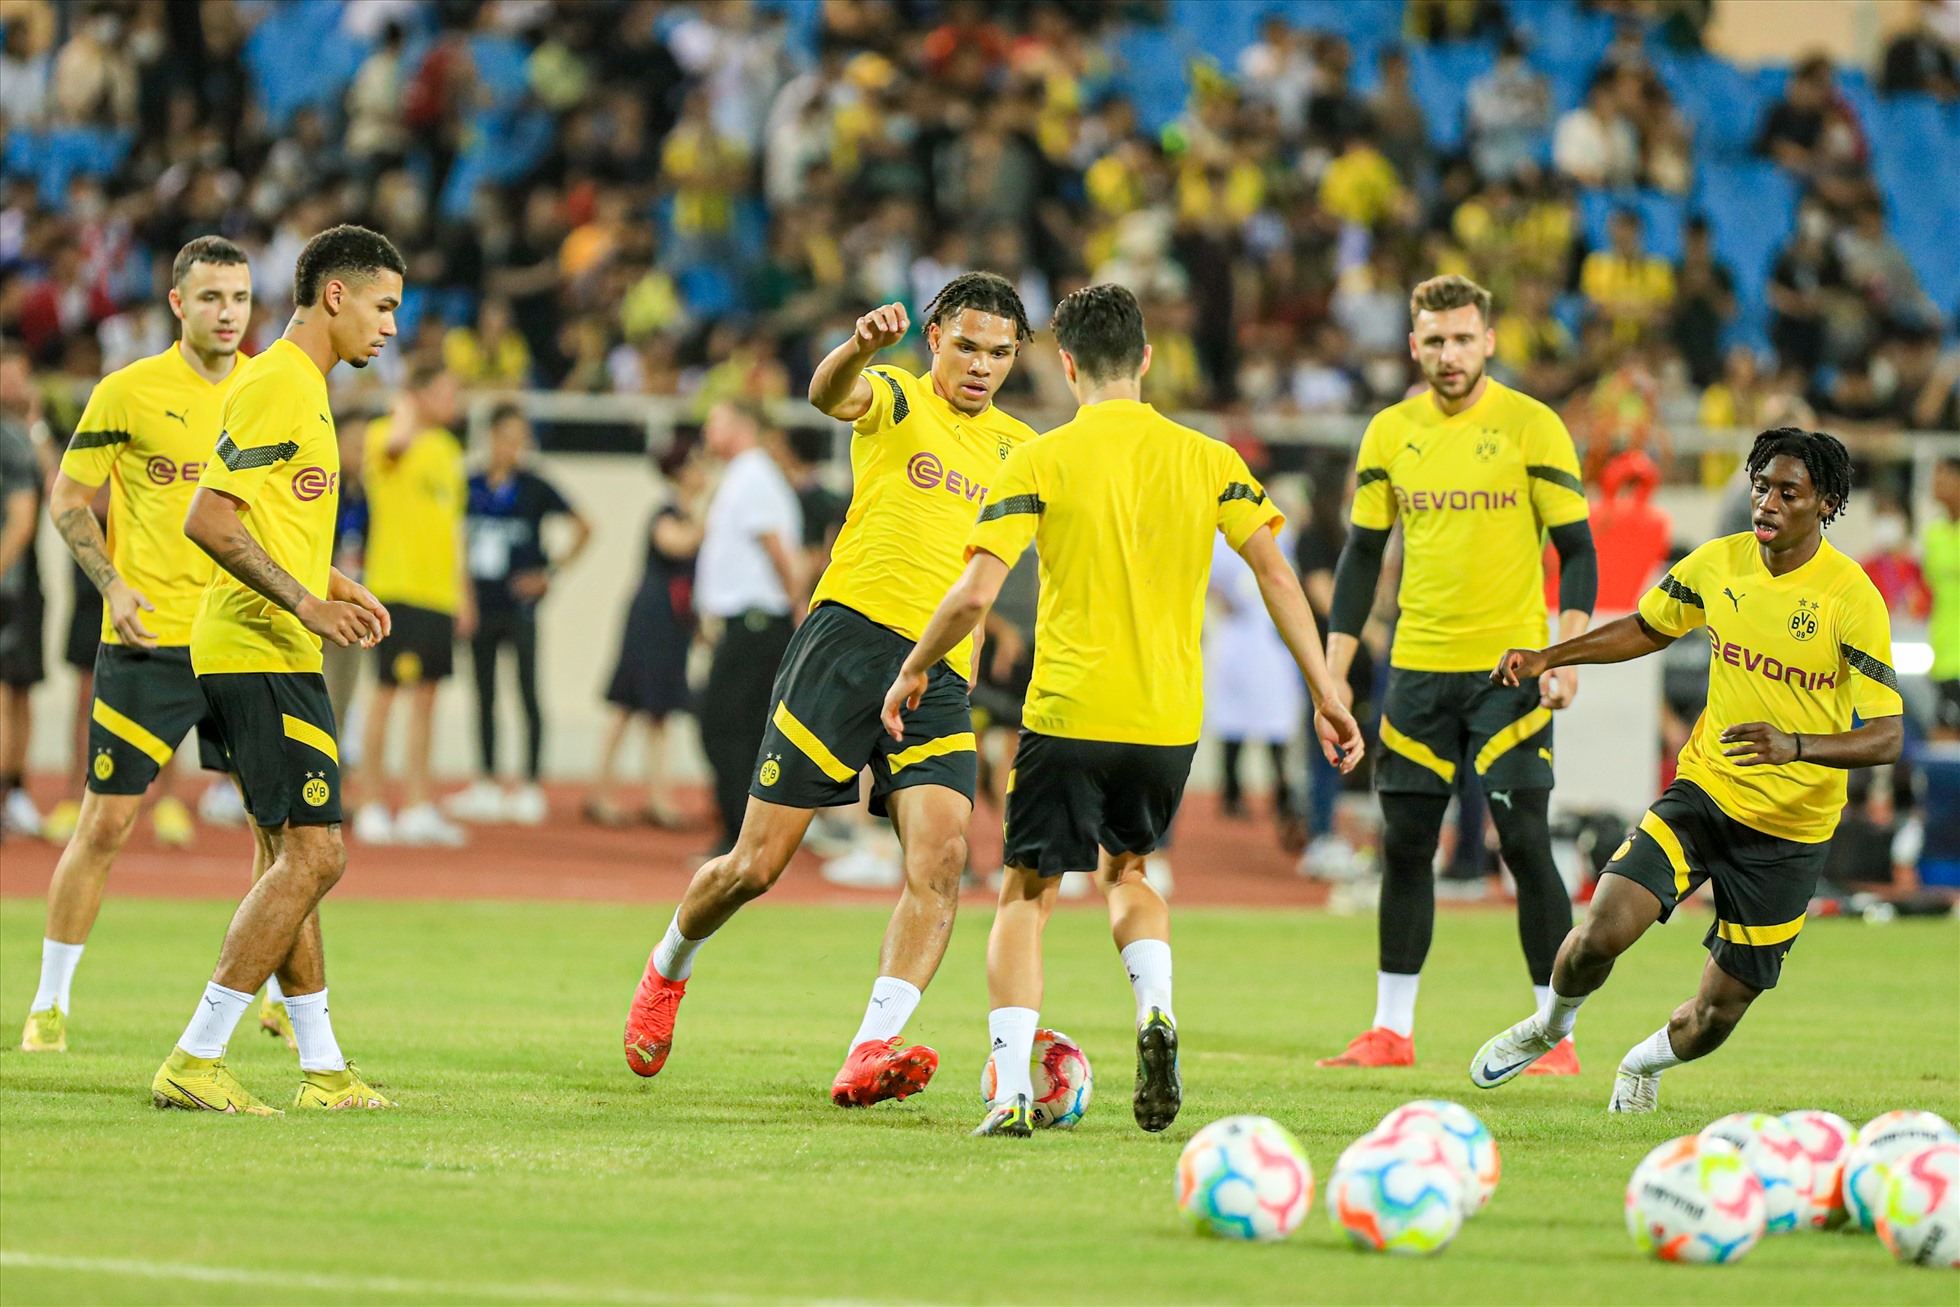 Sau phần khởi động, các cầu thủ Borussia Dortmund chia làm 3 nhóm đá ma, làm quen với bóng.